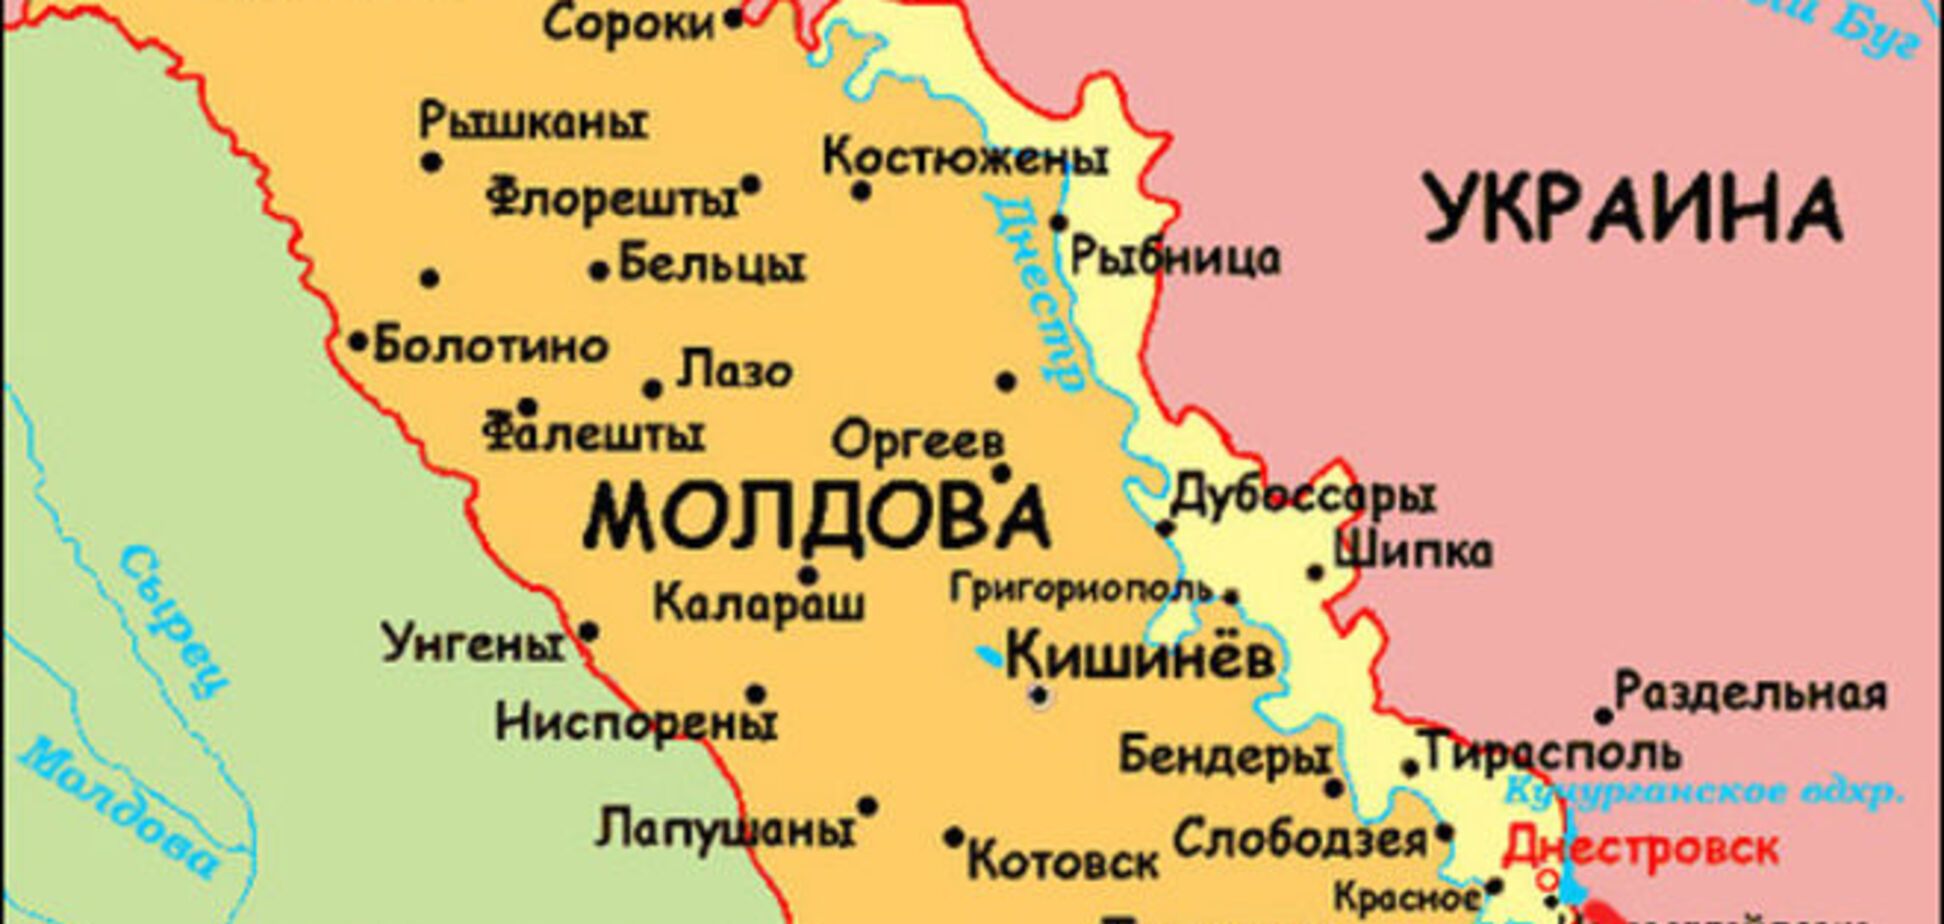 Ситуация хуже, чем на Донбассе: Арестович рассказал, куда может ударить Россия